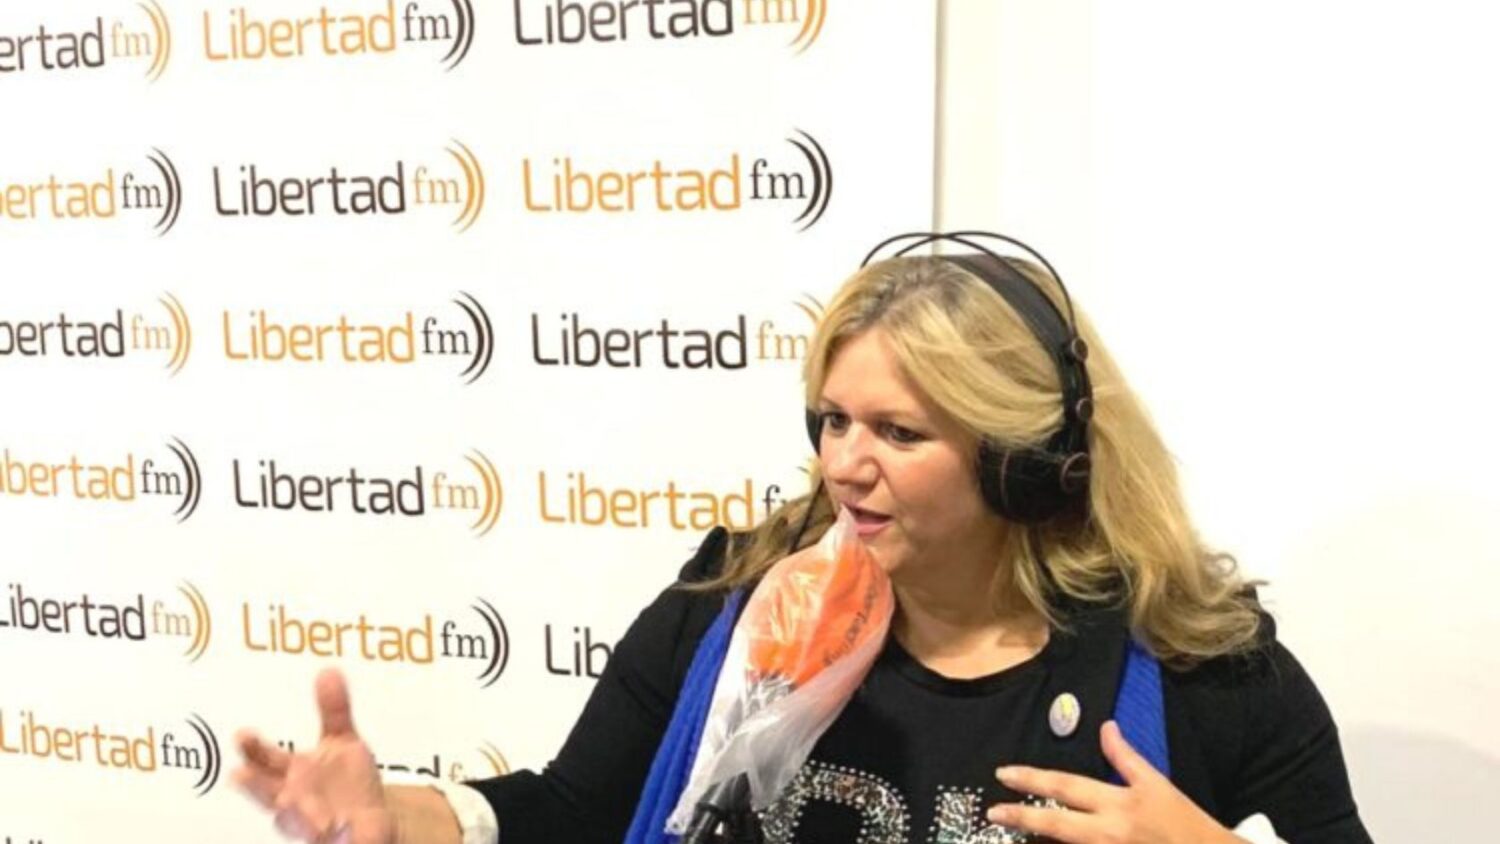 Gracia Sánchez del Real en su programa de radio